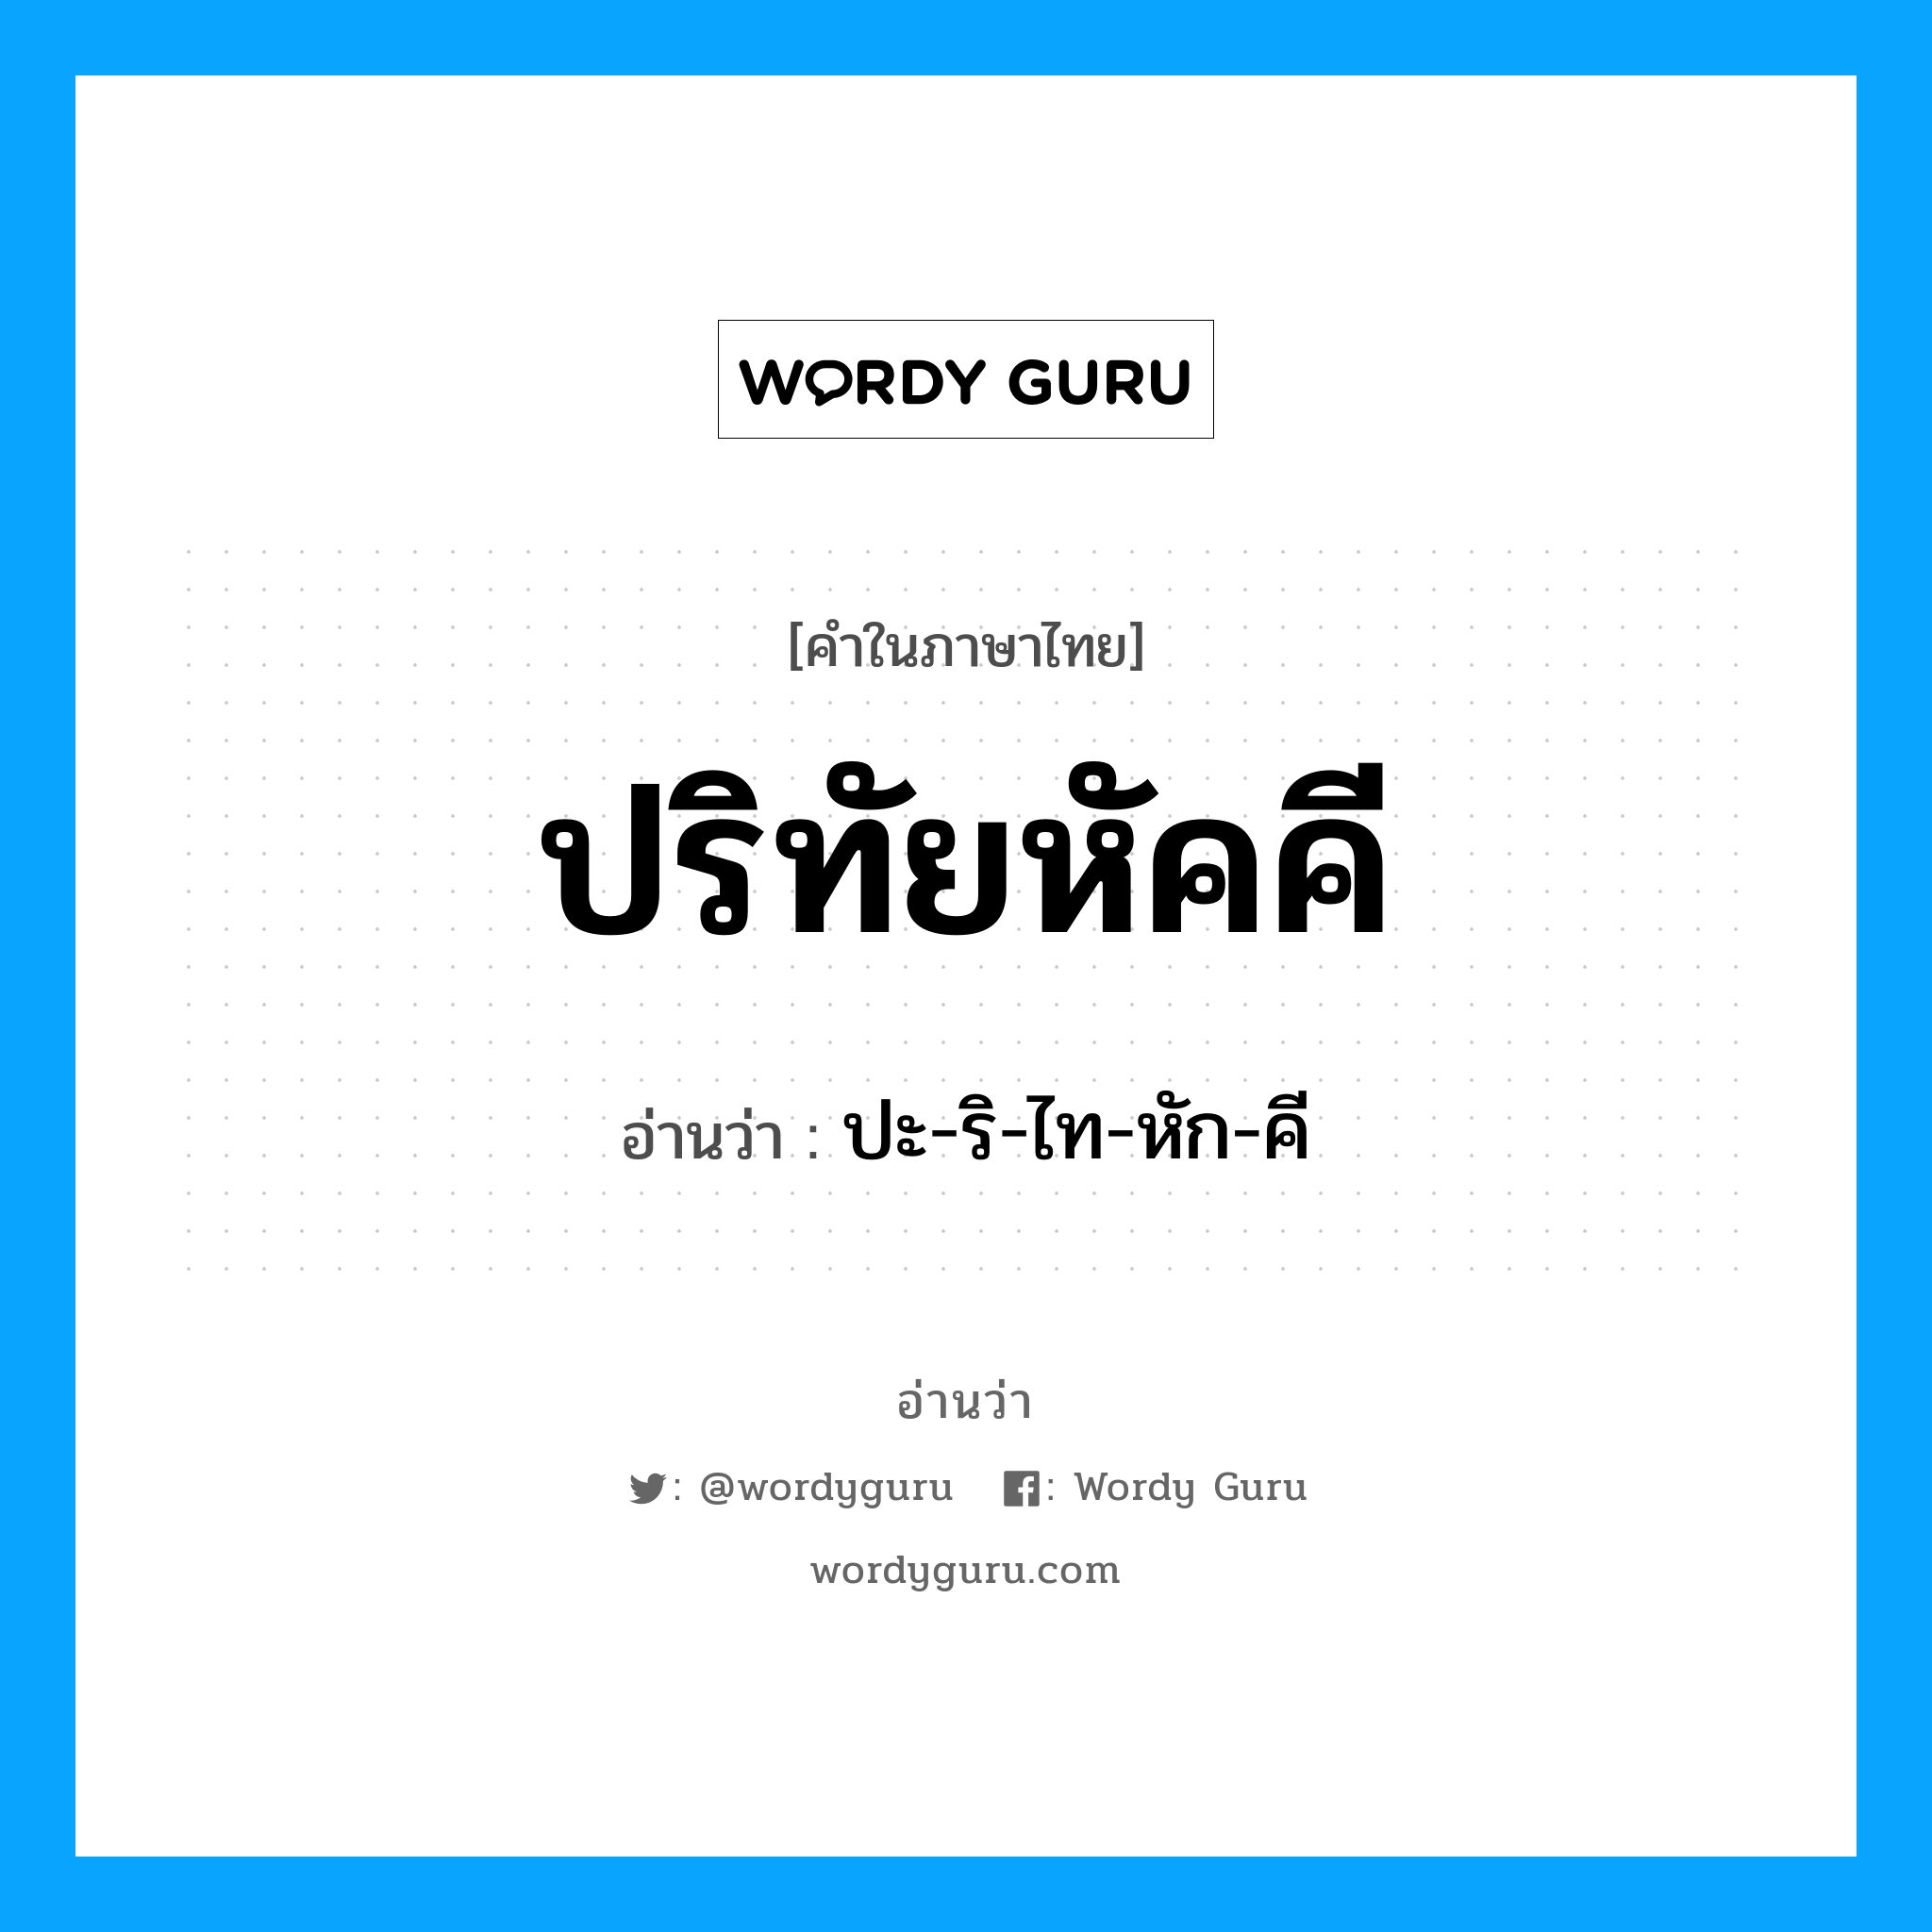 ปะ-ริ-ไท-หัก-คี เป็นคำอ่านของคำไหน?, คำในภาษาไทย ปะ-ริ-ไท-หัก-คี อ่านว่า ปริทัยหัคคี